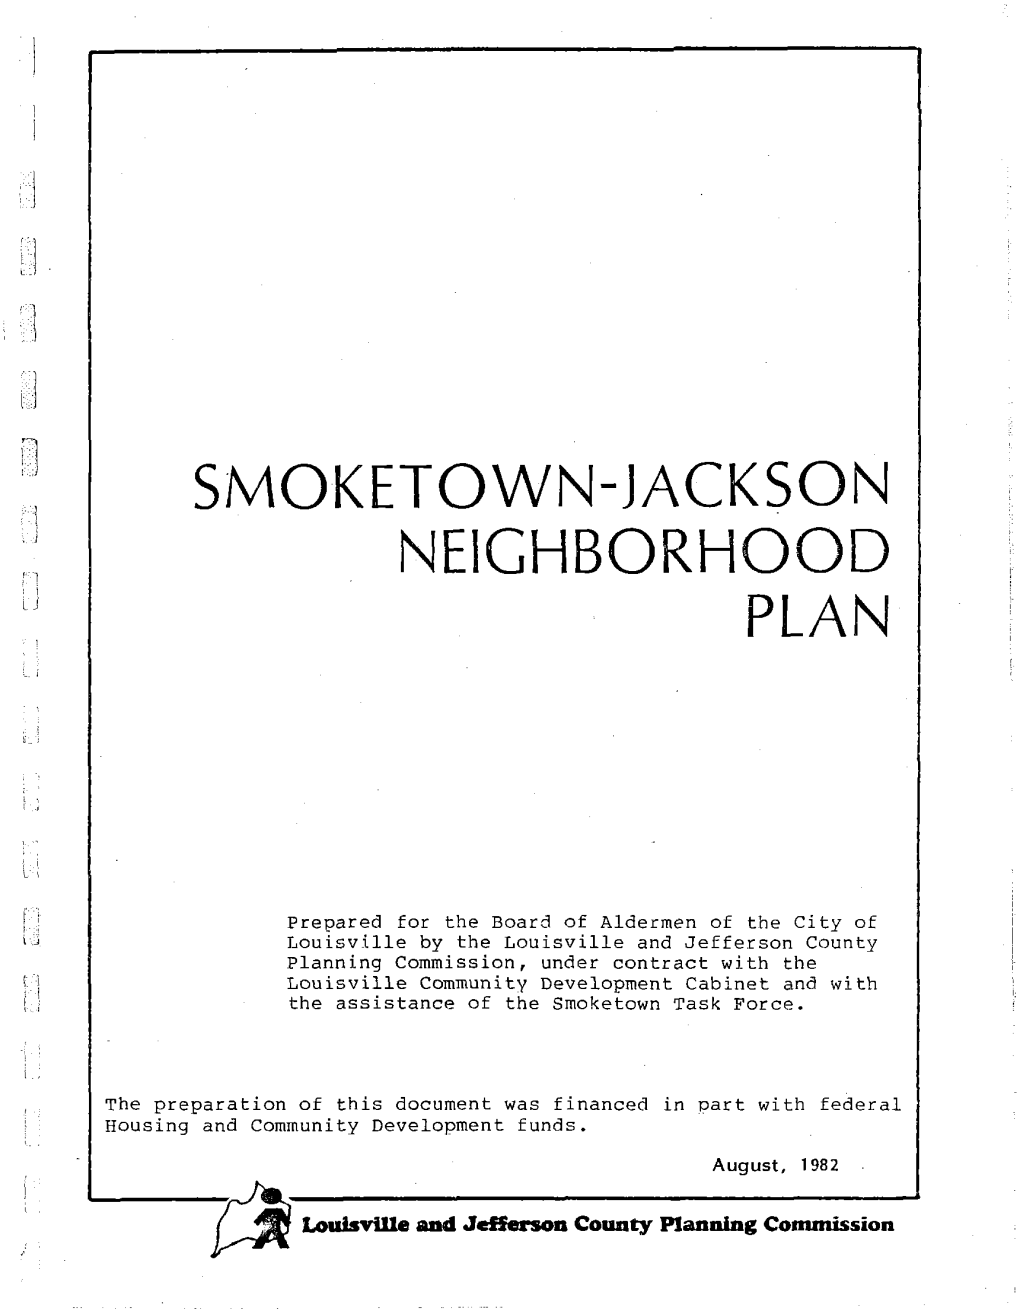 Smoketown-Jackson Neighborhood Plan